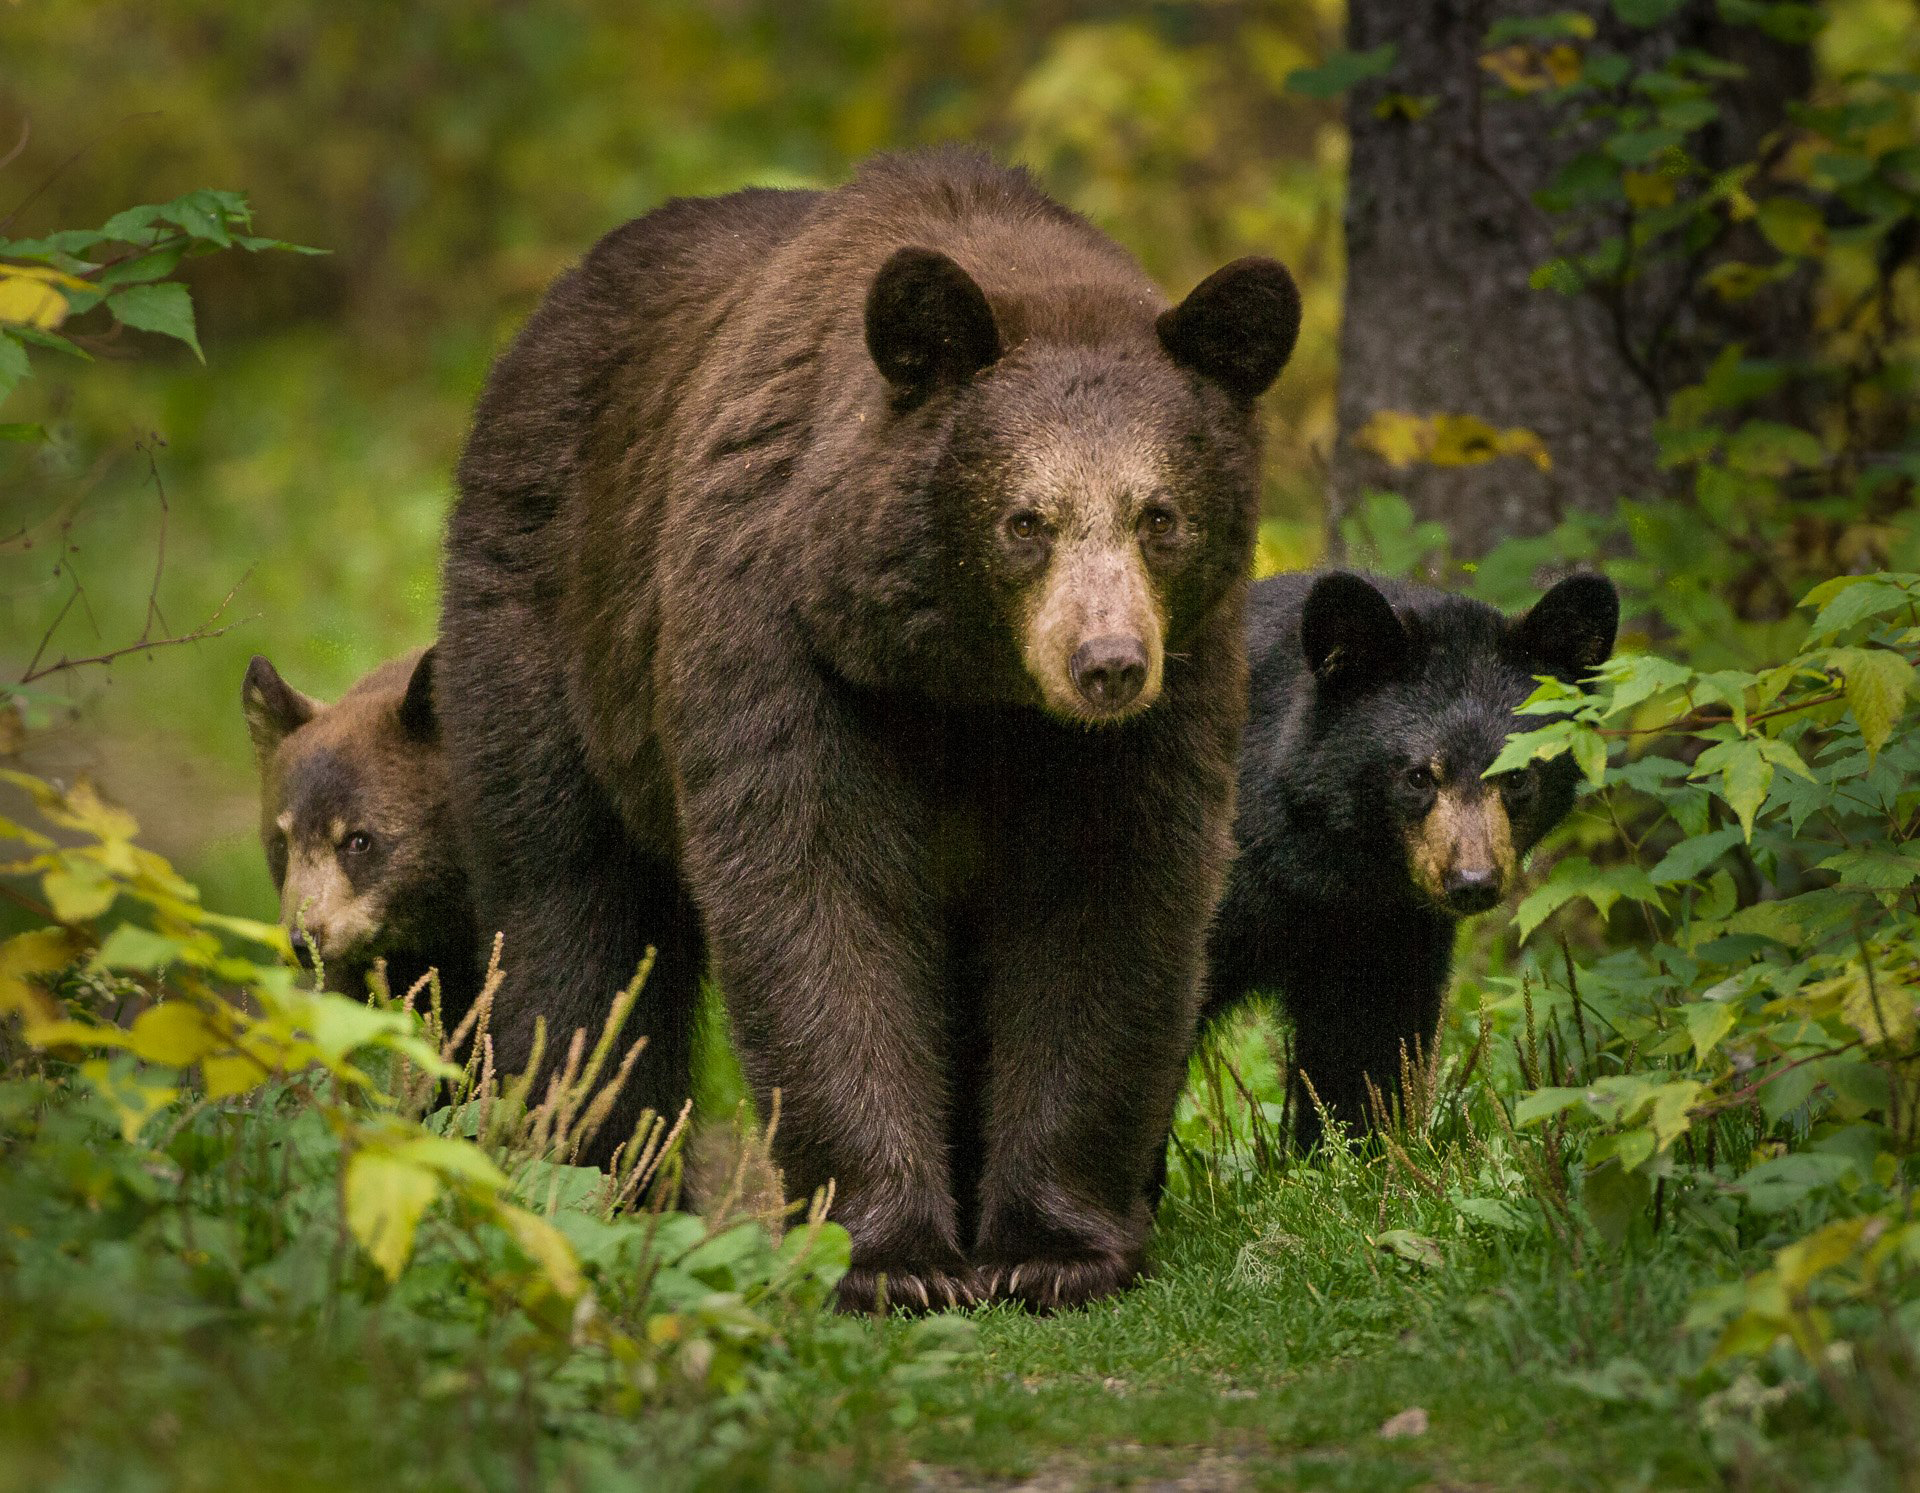 Black bear mom and cubs (Paul Burwell).